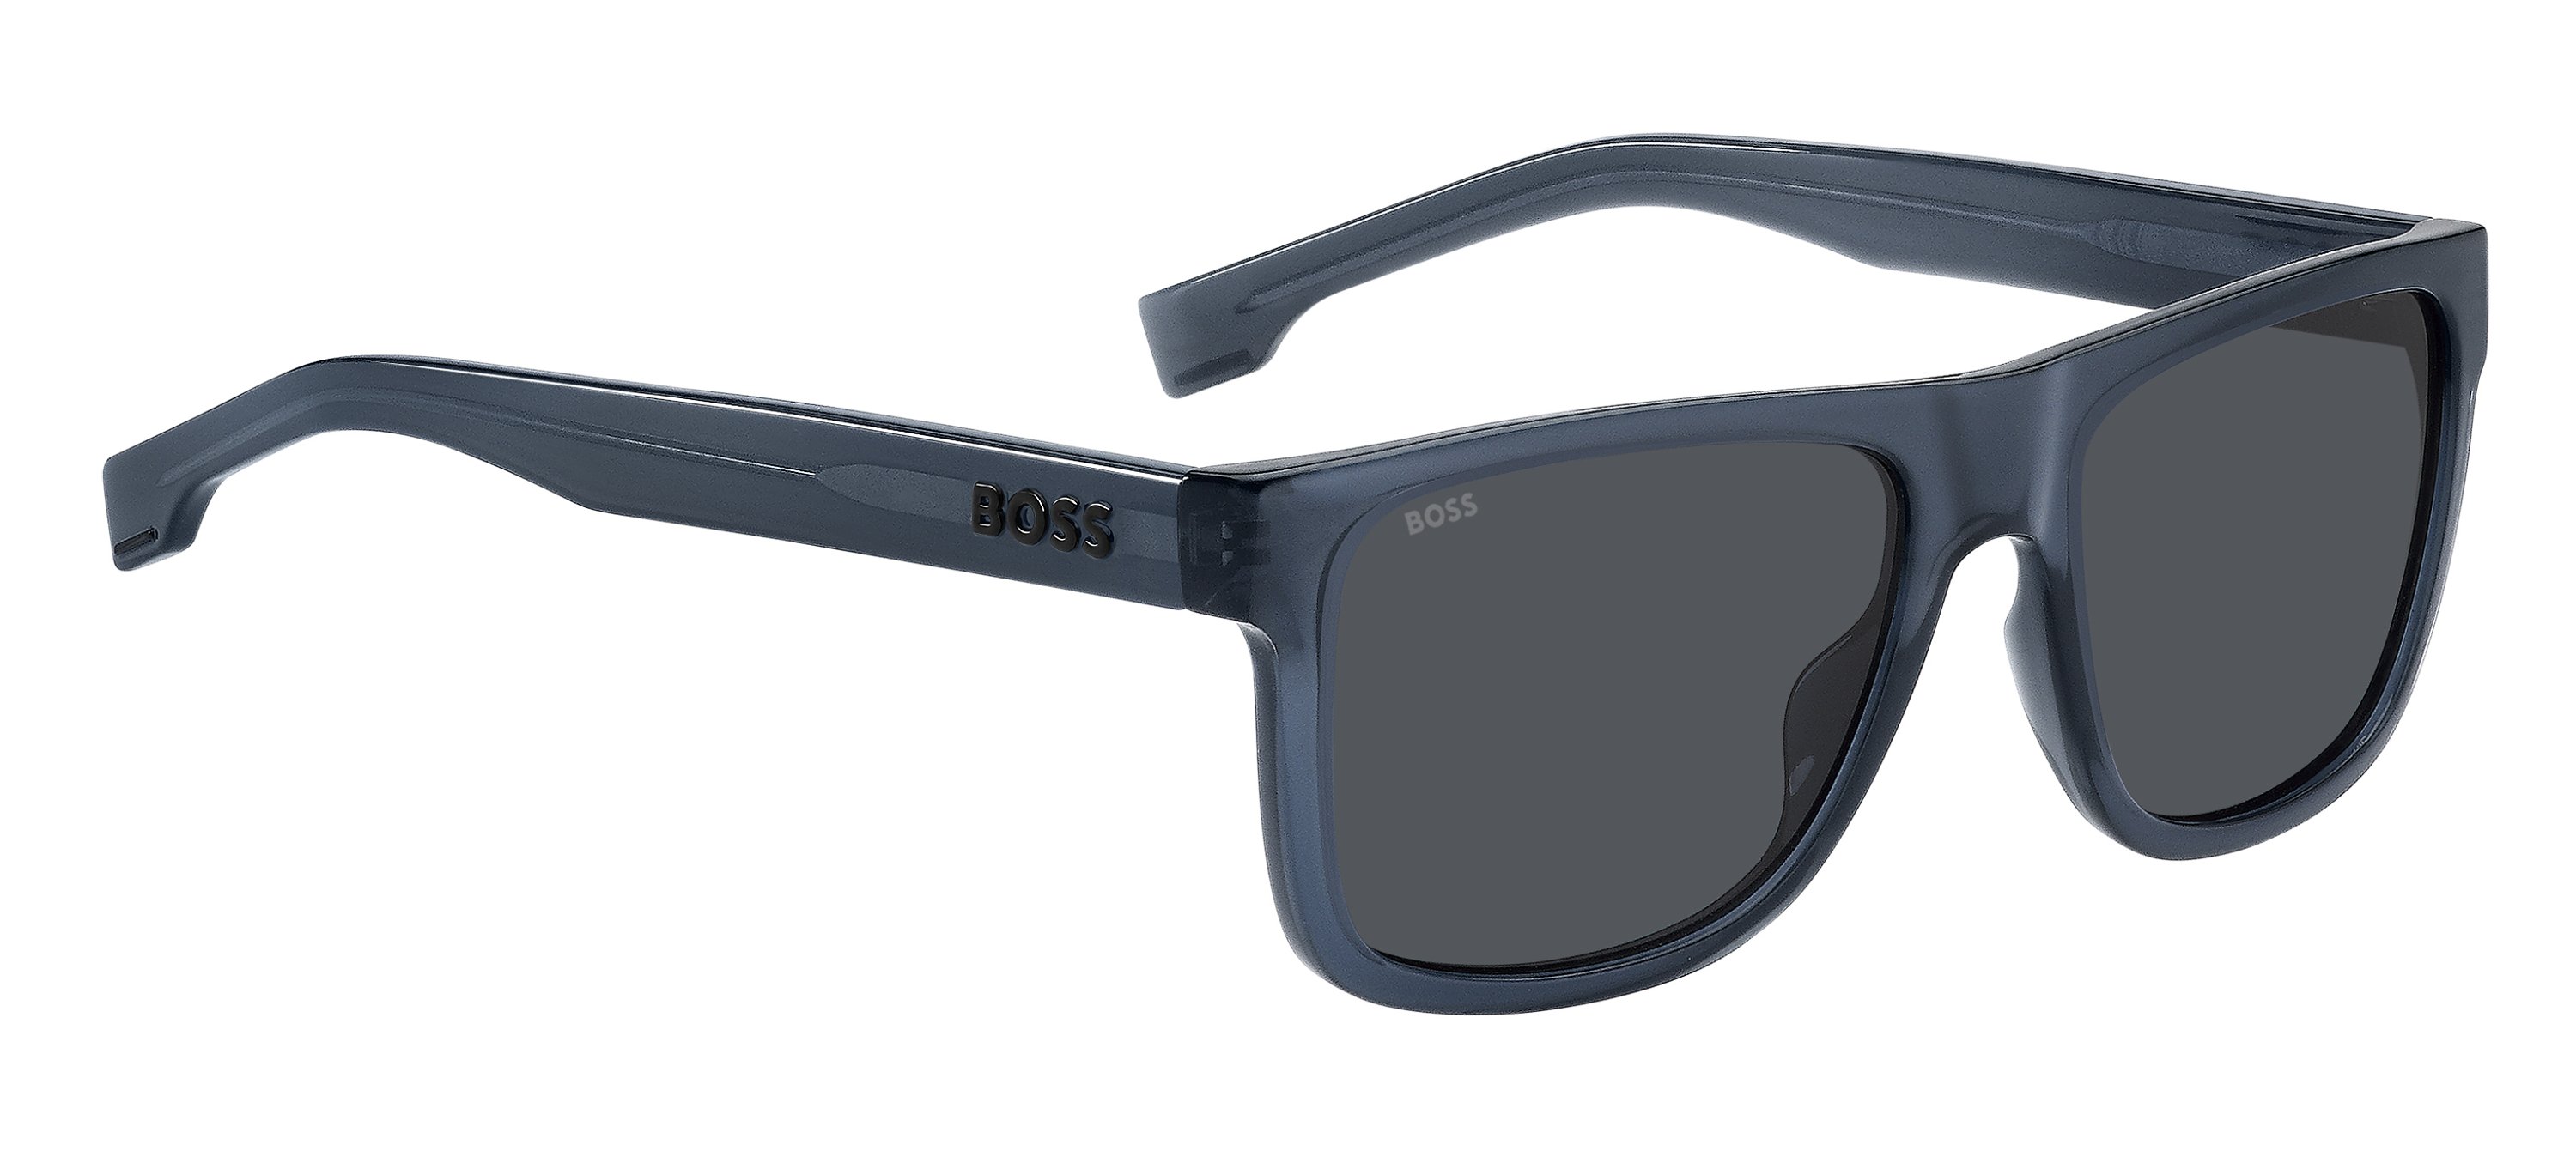 Das Bild zeigt die Sonnenbrille BOSS1647S PJP von der Marke BOSS in Blau.